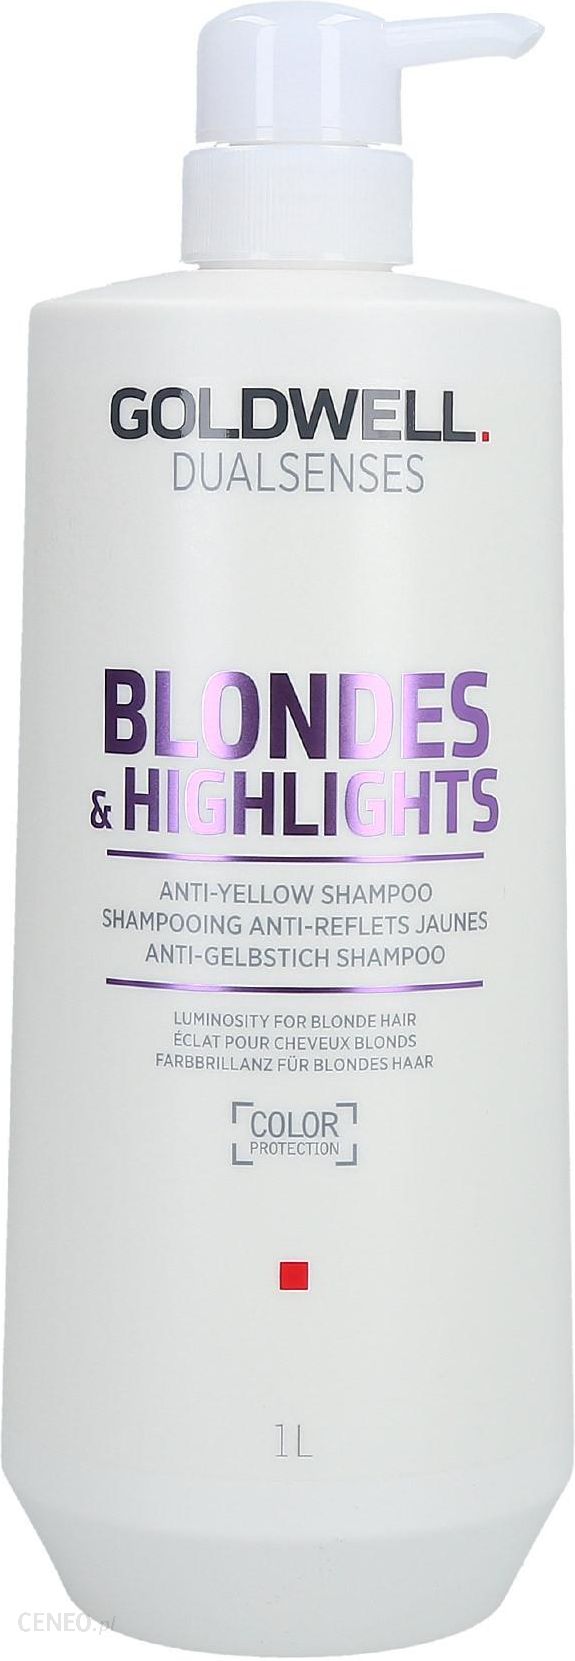 goldwell dualsenses blondes & highlights szampon do włosów